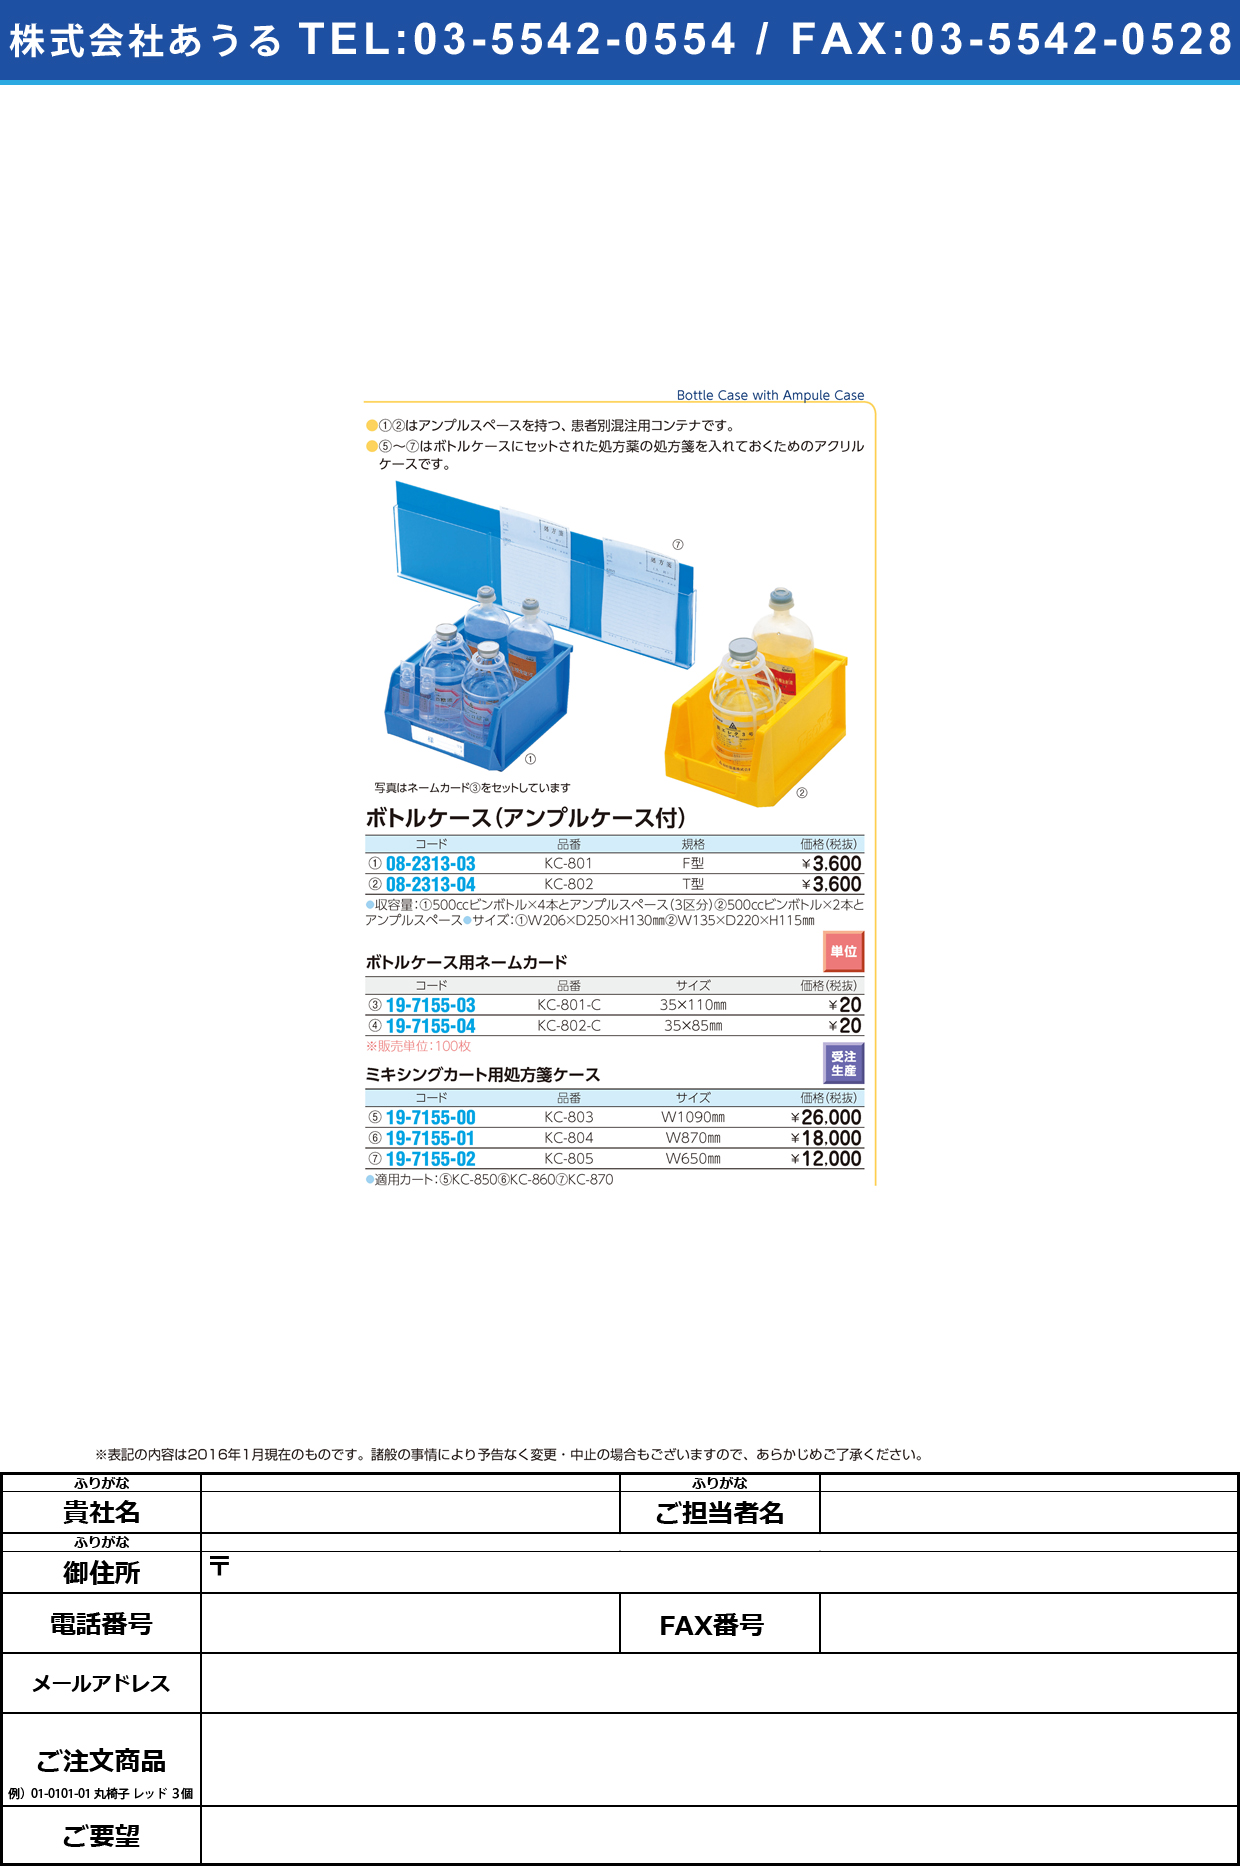 (08-2313-04)ミキシングカート用ボトルケースＴ型 KC802 KC-802【1個単位】【2016年カタログ商品】